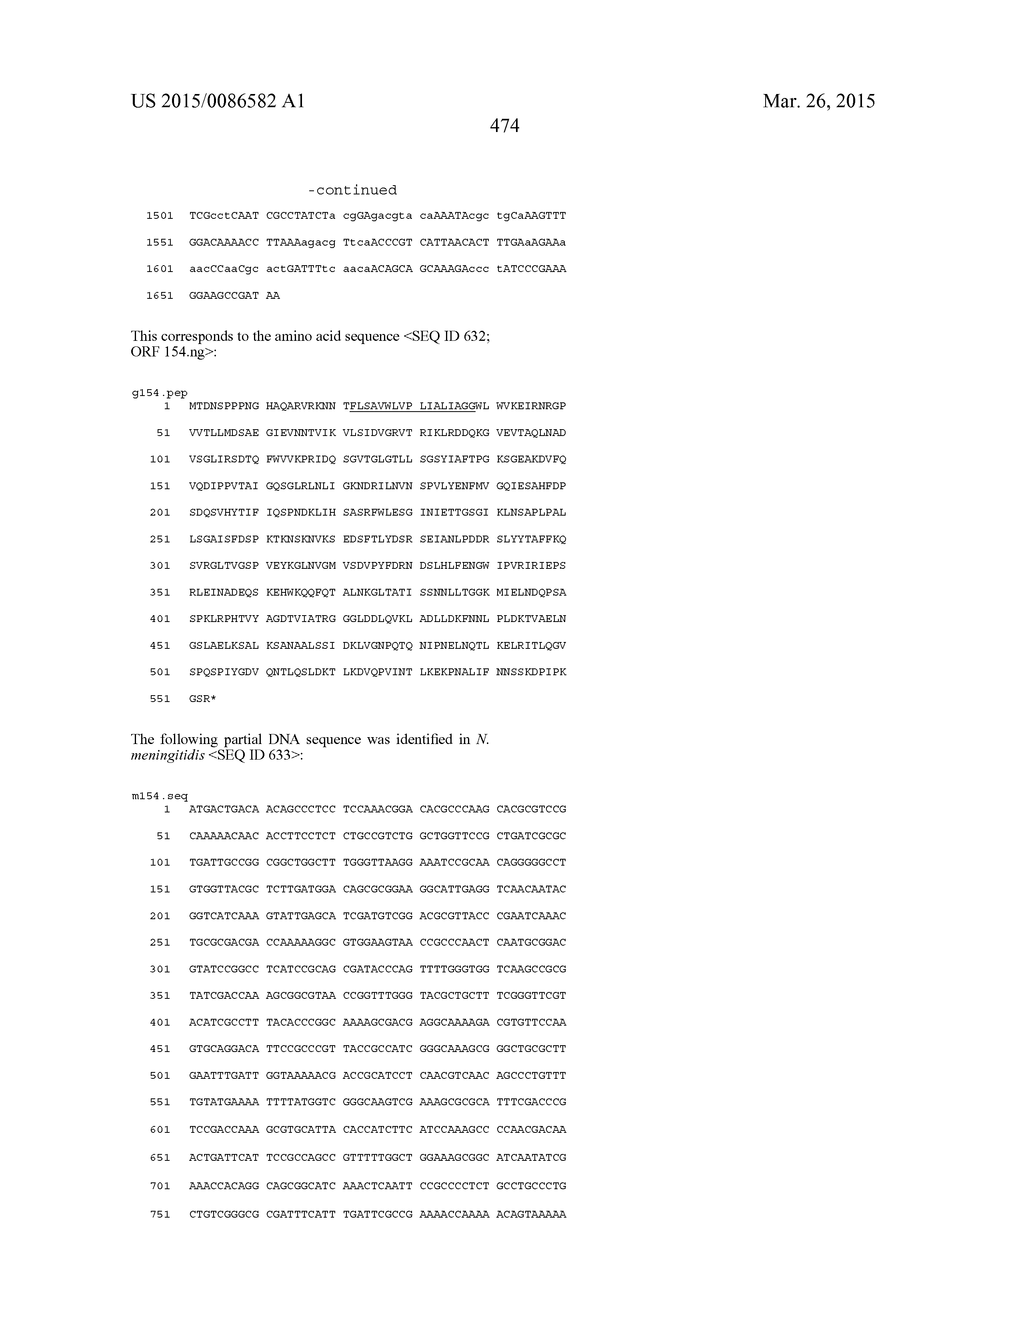 NEISSERIA MENINGITIDIS ANTIGENS AND COMPOSITIONS - diagram, schematic, and image 506